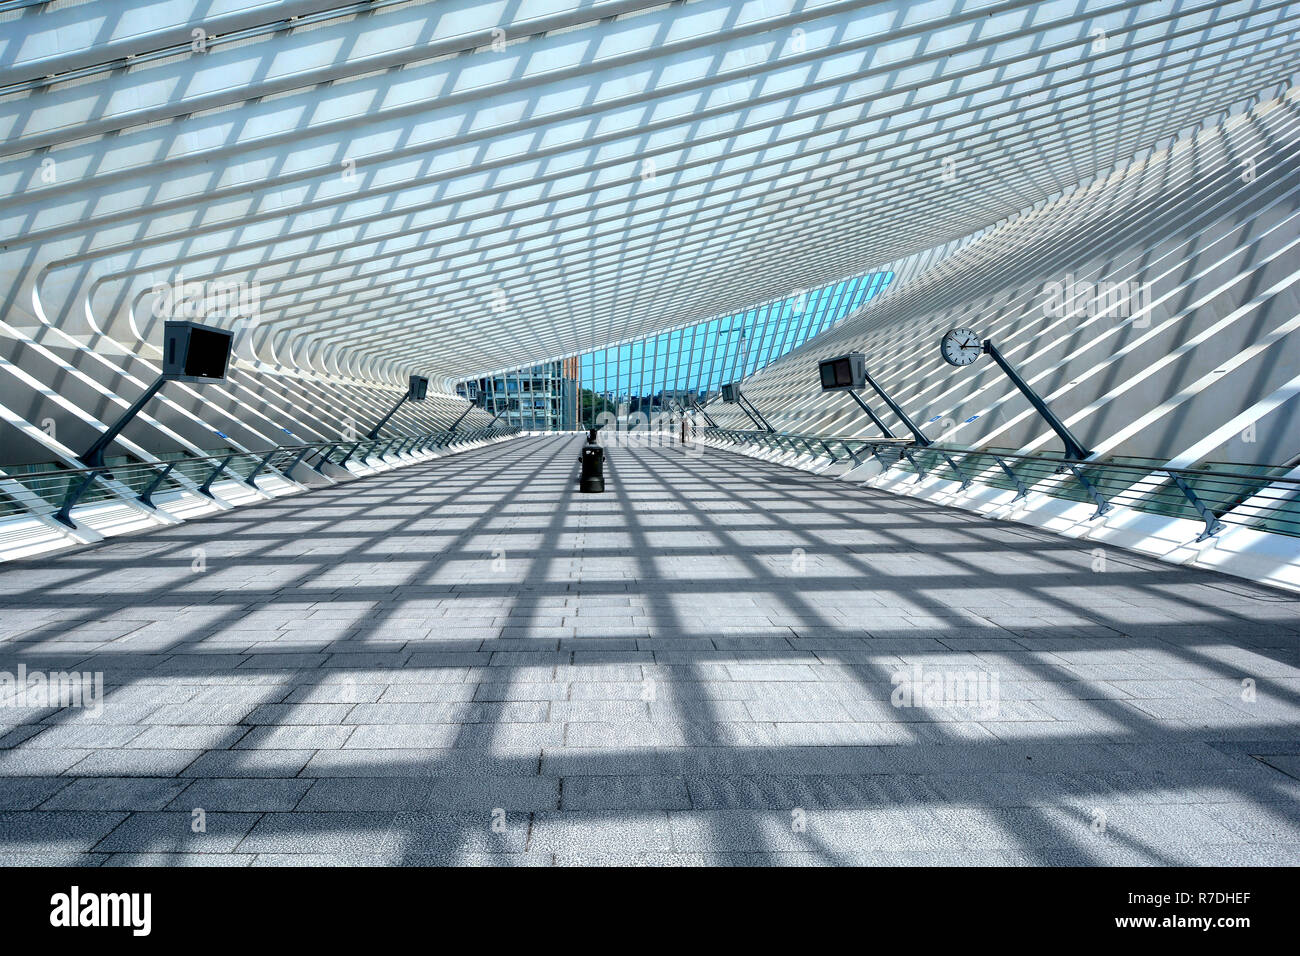 Wallonien symmetrische Schattenmuster Sonnenschein moderne Architektur Glas dach Struktur & design öffentliche Verkehrsmittel Bahnhof Gebäude Belgien Lüttich Stockfoto